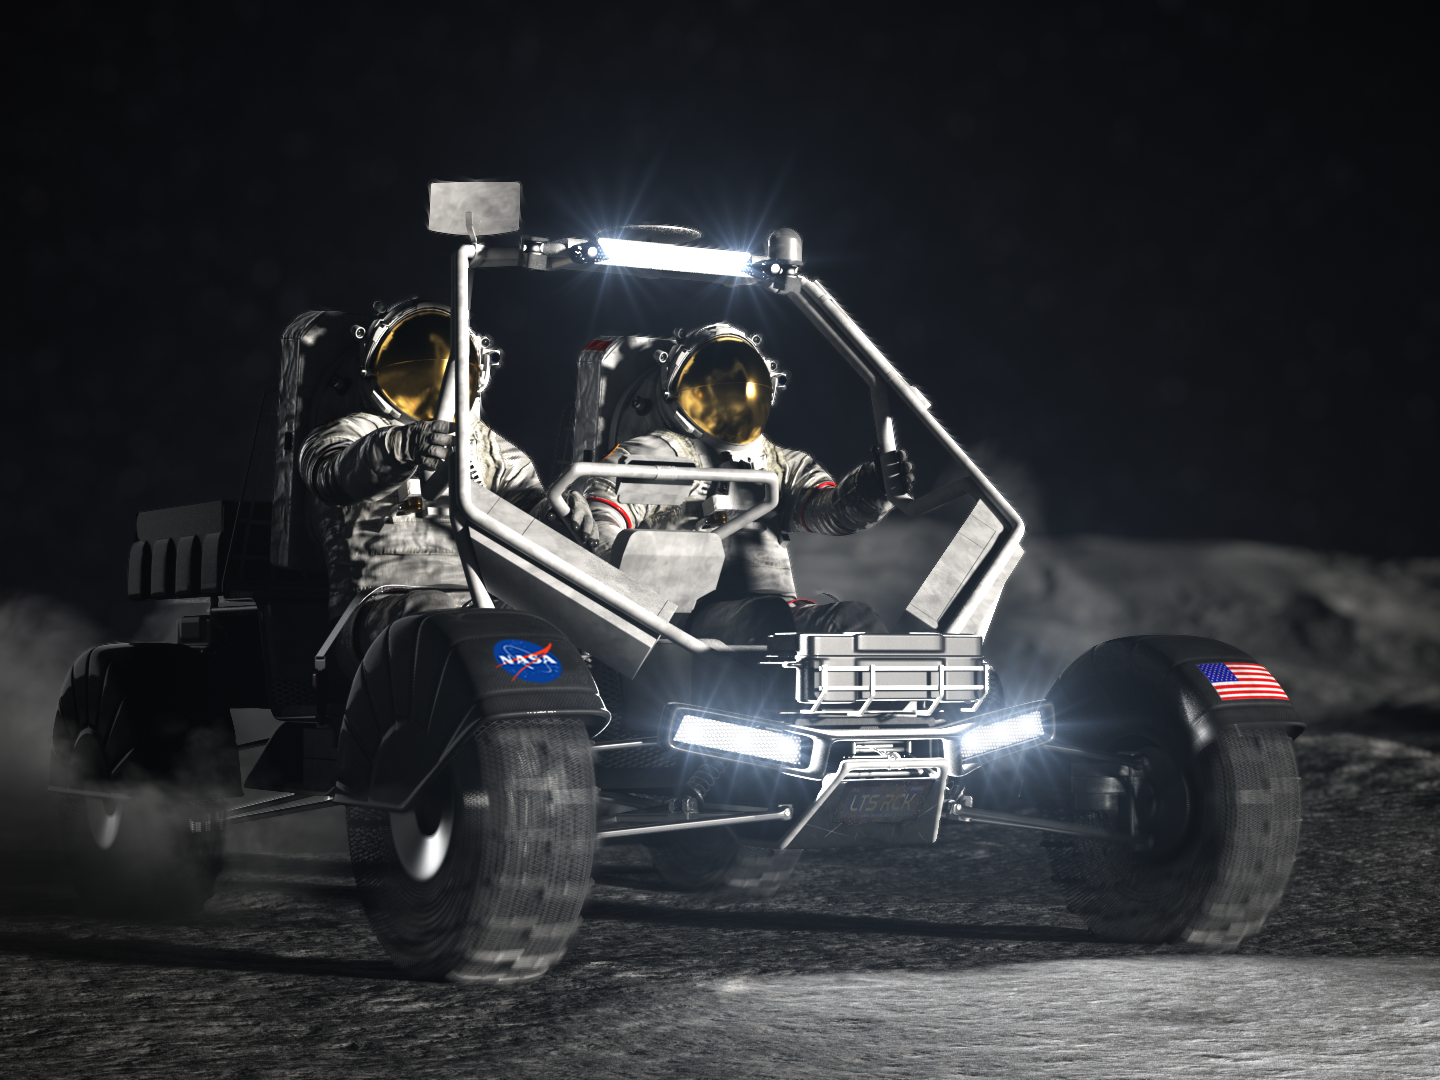 Conosciamo meglio i due veicoli principali che useranno gli astronauti di Artemis sulla Luna